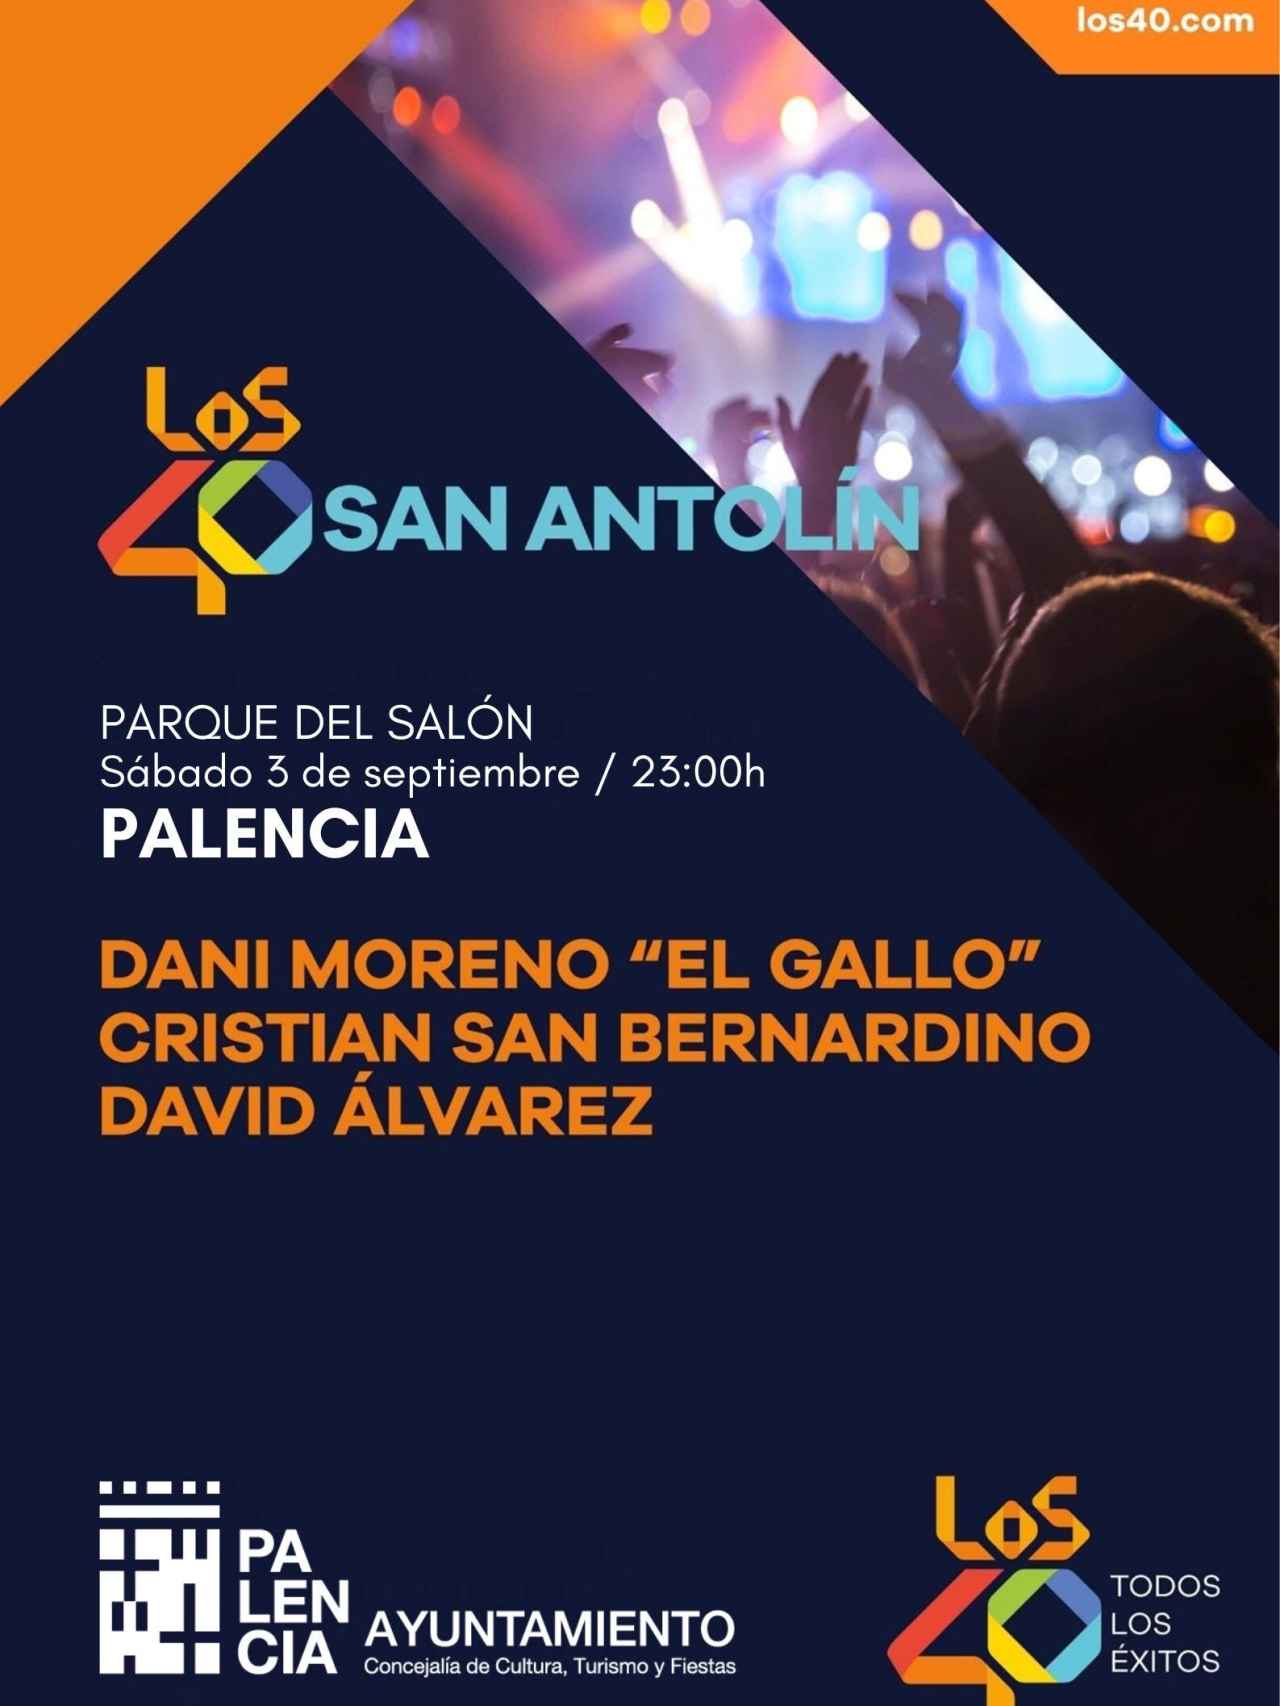 Cartel de Los 40 para las fiestas de San Antolín de Palencia